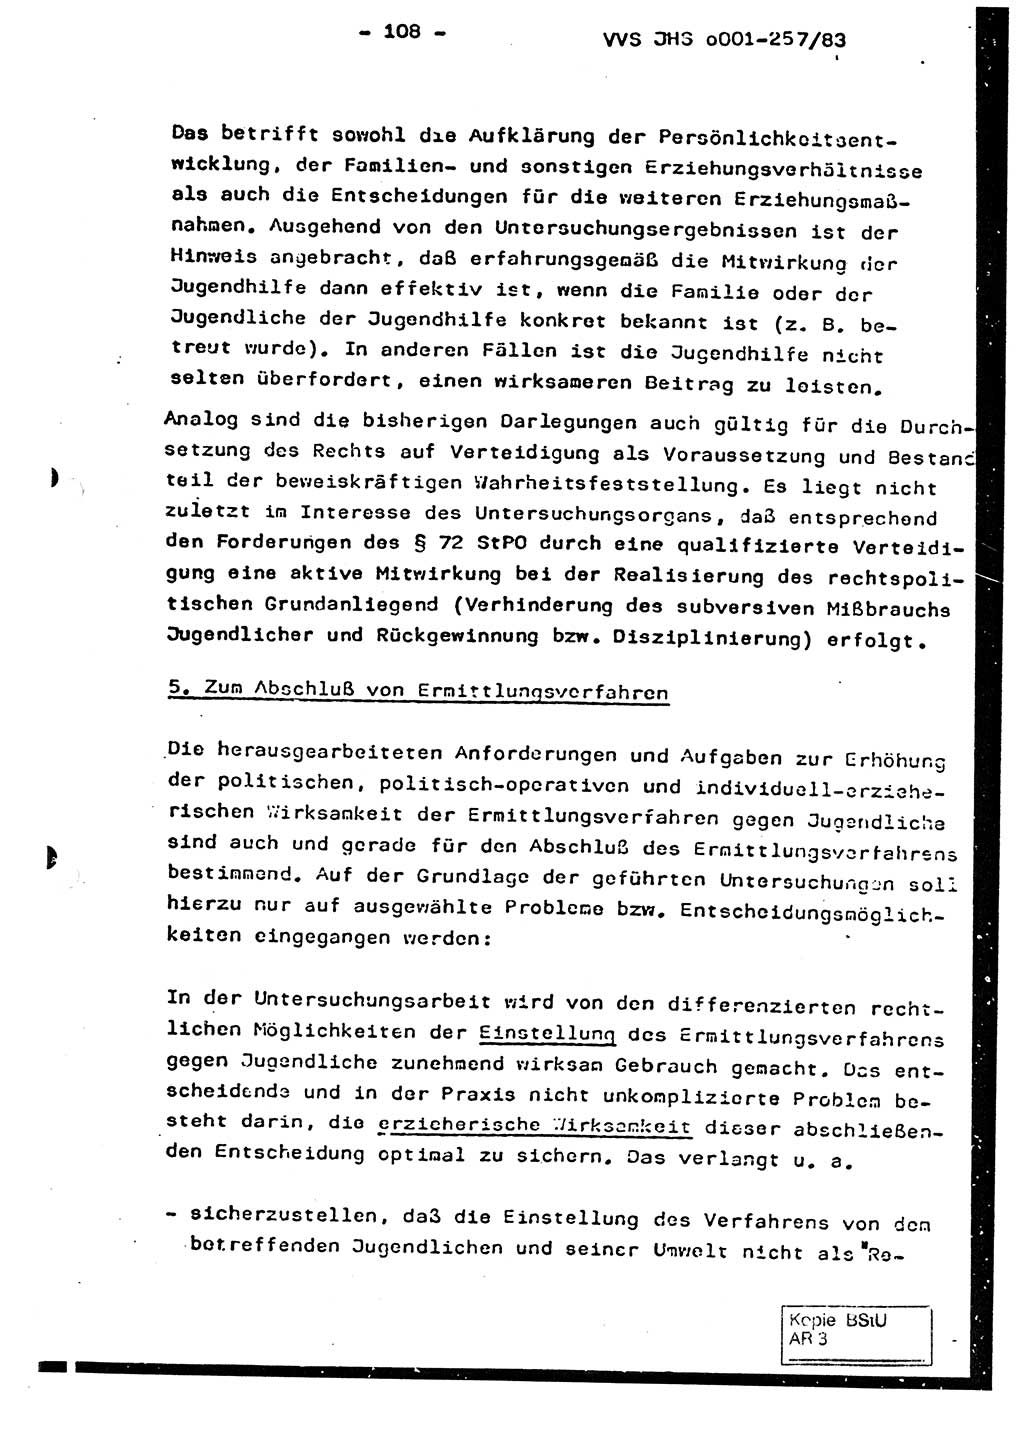 Dissertation, Oberst Helmut Lubas (BV Mdg.), Oberstleutnant Manfred Eschberger (HA IX), Oberleutnant Hans-Jürgen Ludwig (JHS), Ministerium für Staatssicherheit (MfS) [Deutsche Demokratische Republik (DDR)], Juristische Hochschule (JHS), Vertrauliche Verschlußsache (VVS) o001-257/83, Potsdam 1983, Seite 108 (Diss. MfS DDR JHS VVS o001-257/83 1983, S. 108)